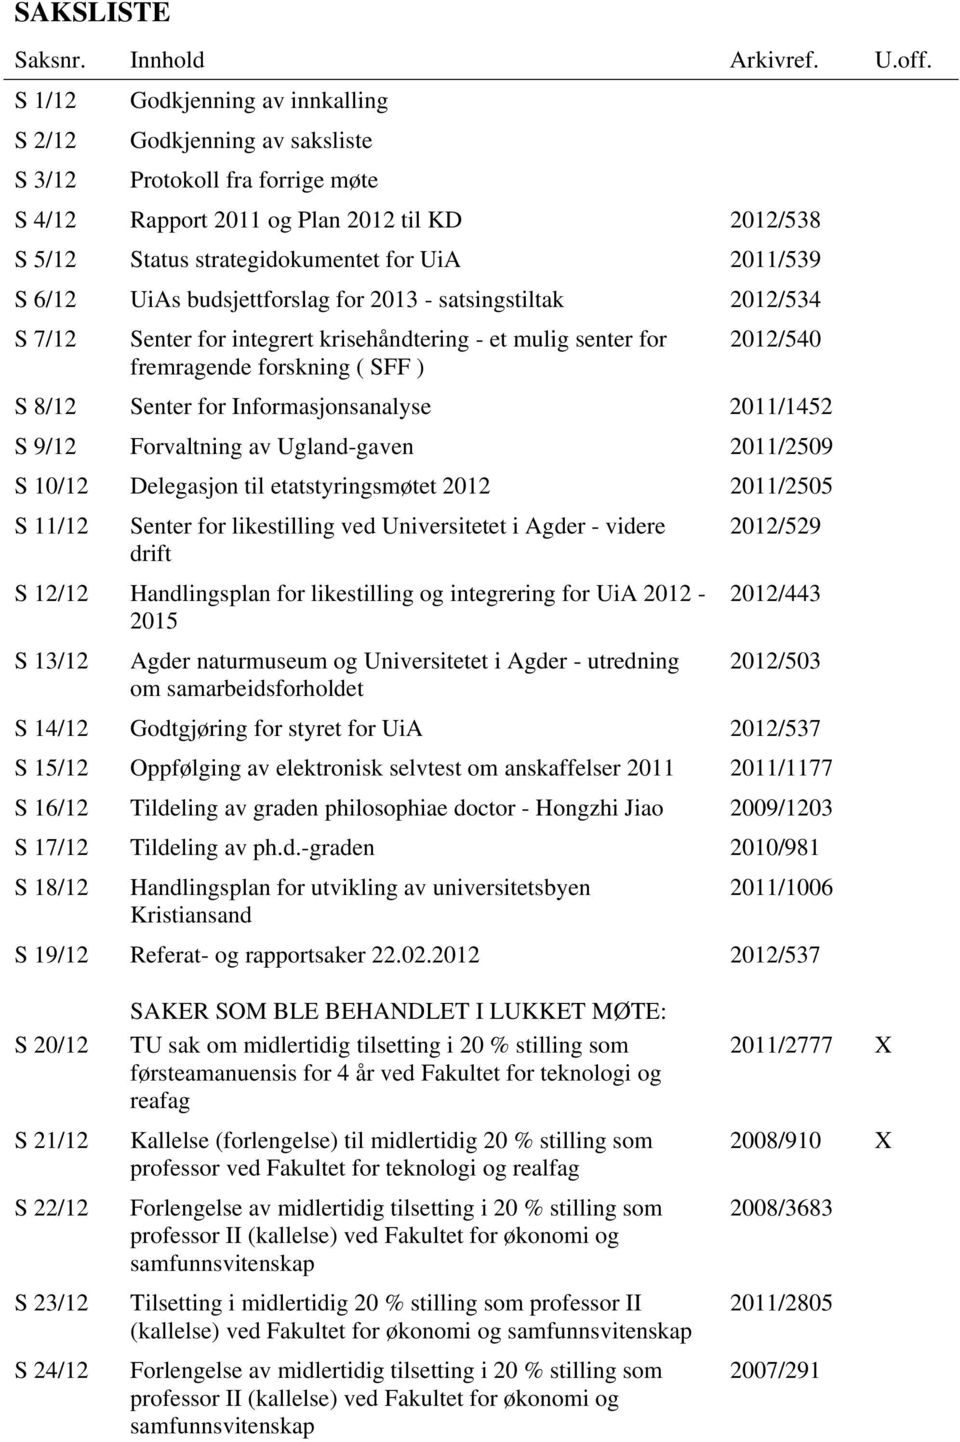 6/12 UiAs budsjettforslag for 2013 - satsingstiltak 2012/534 S 7/12 Senter for integrert krisehåndtering - et mulig senter for 2012/540 fremragende forskning ( SFF ) S 8/12 Senter for